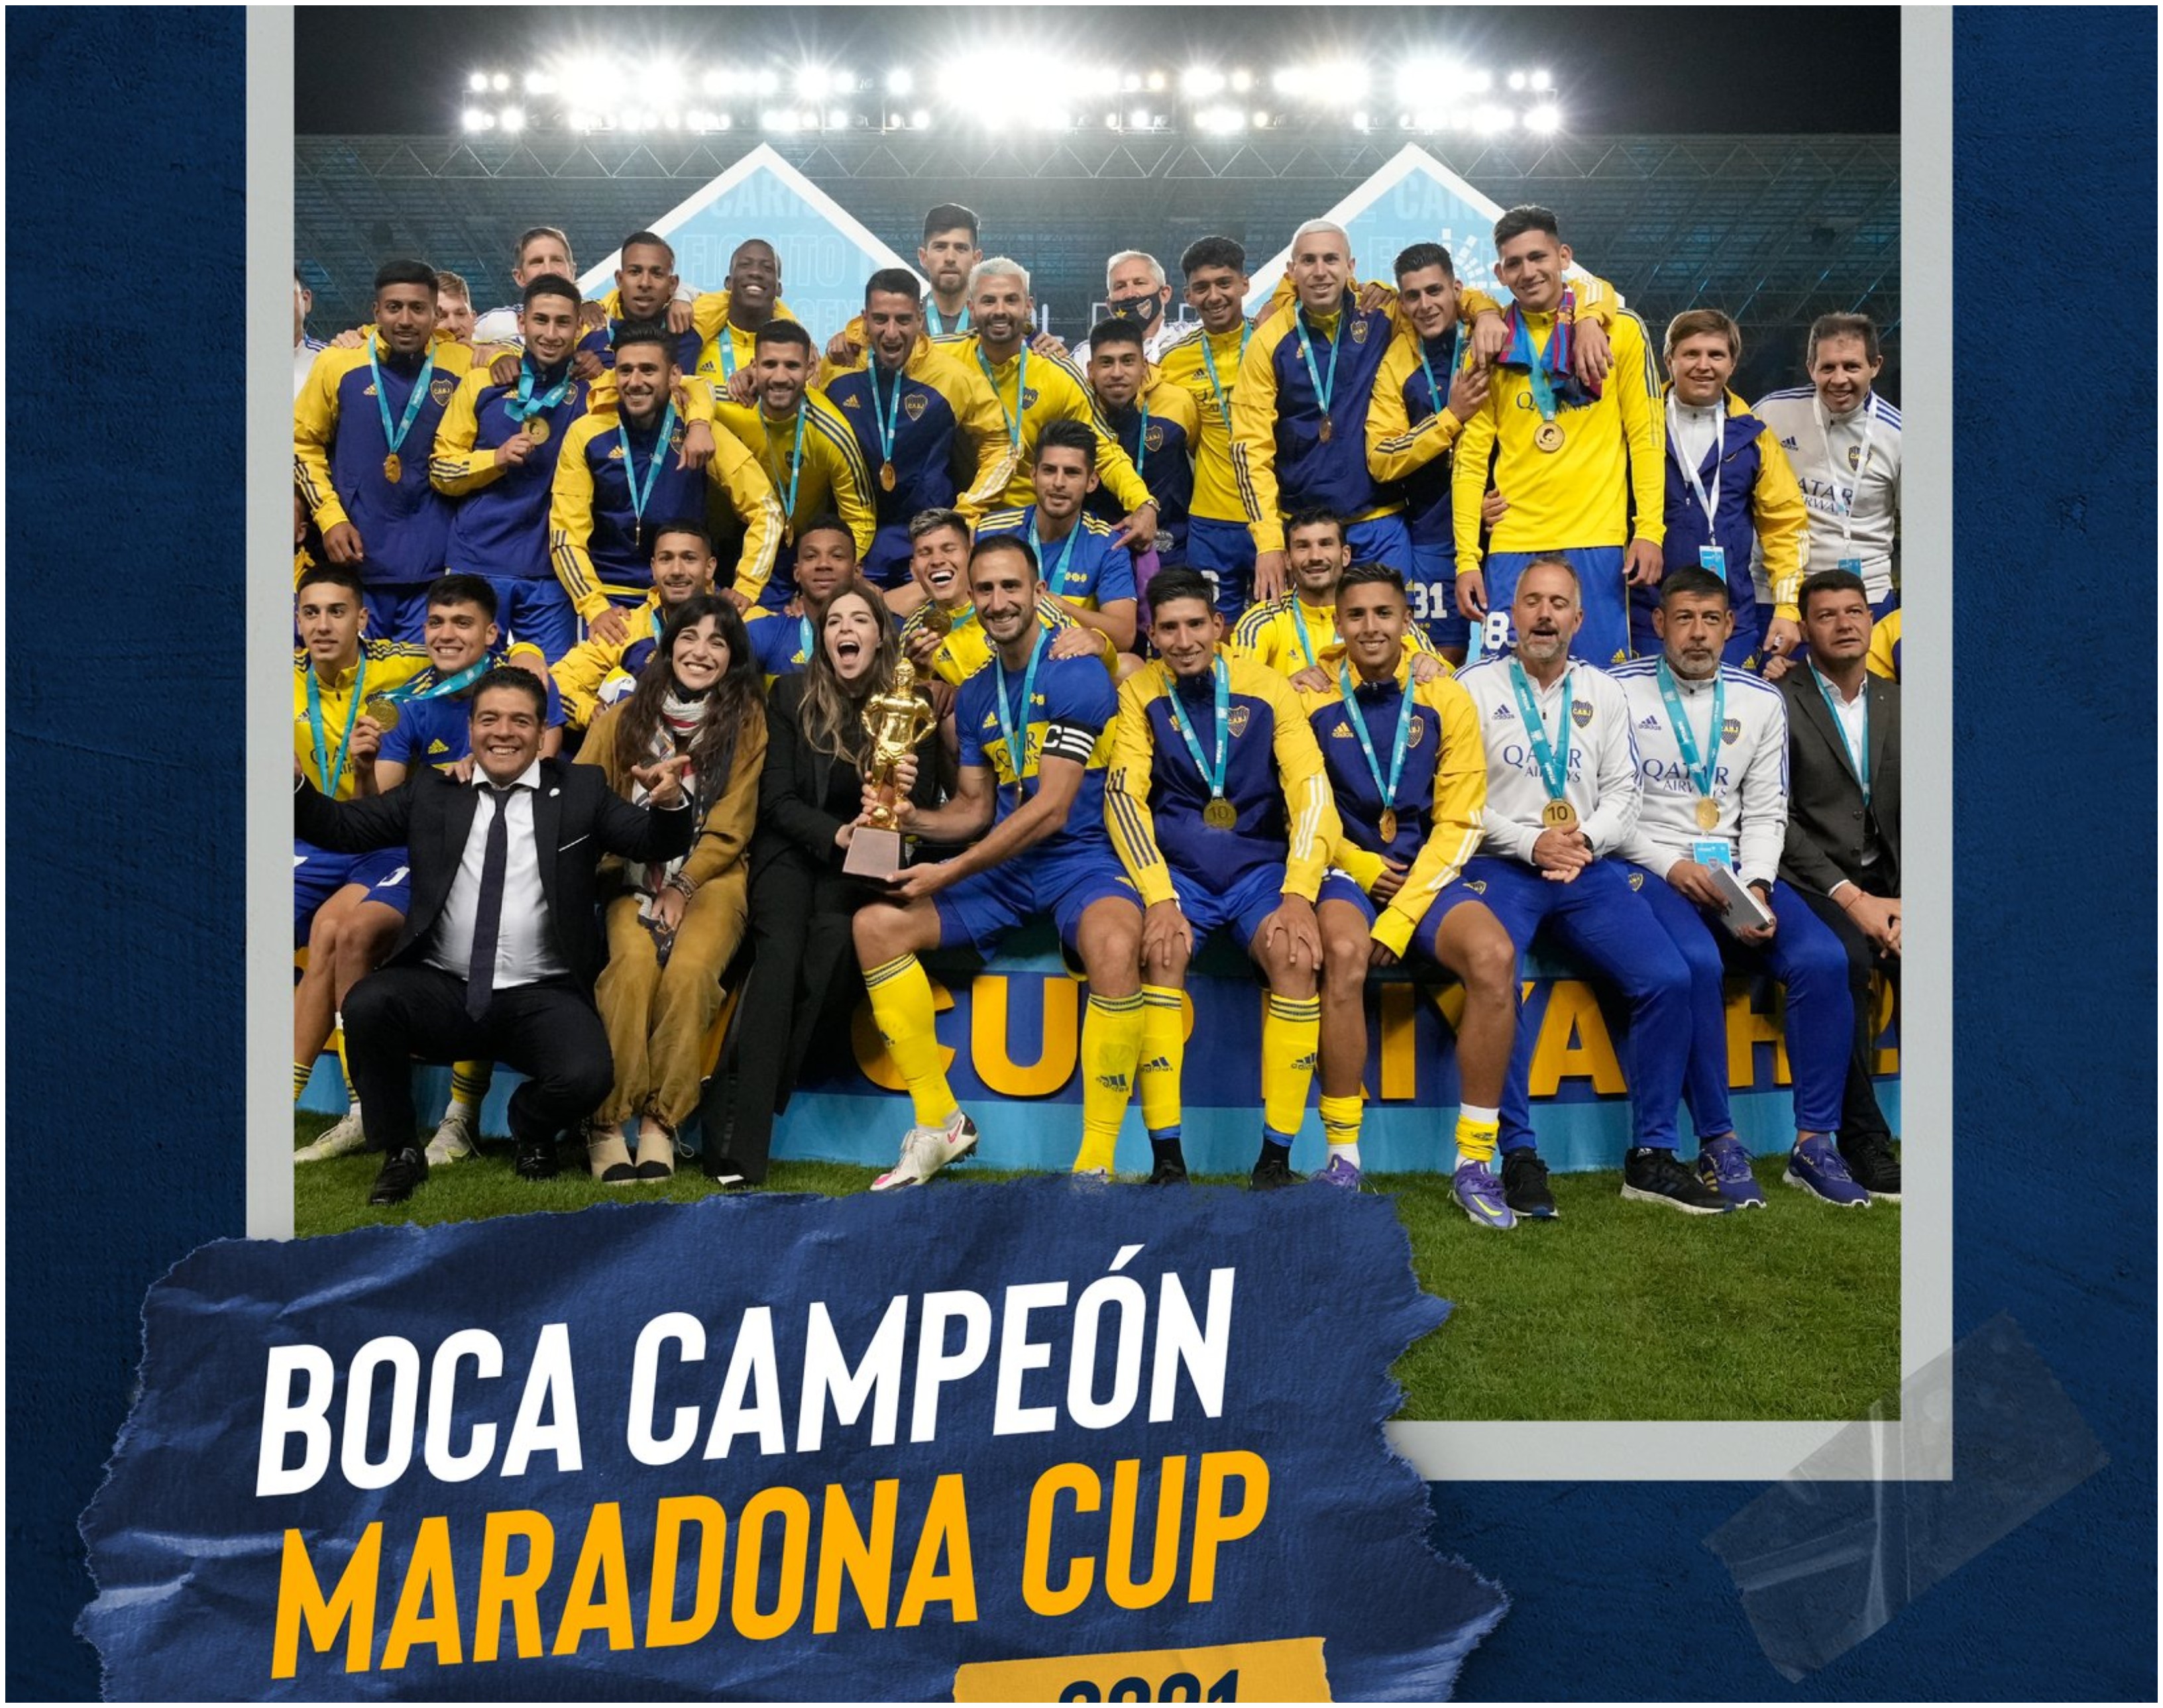 Esta foto la publicó Boca Juniors en su cuenta de Twitter. En ella aparecen las hijas del Diez, Dalma y Giannina junto con la Copa Diego Maradona. Foto @BocaJrsOficial